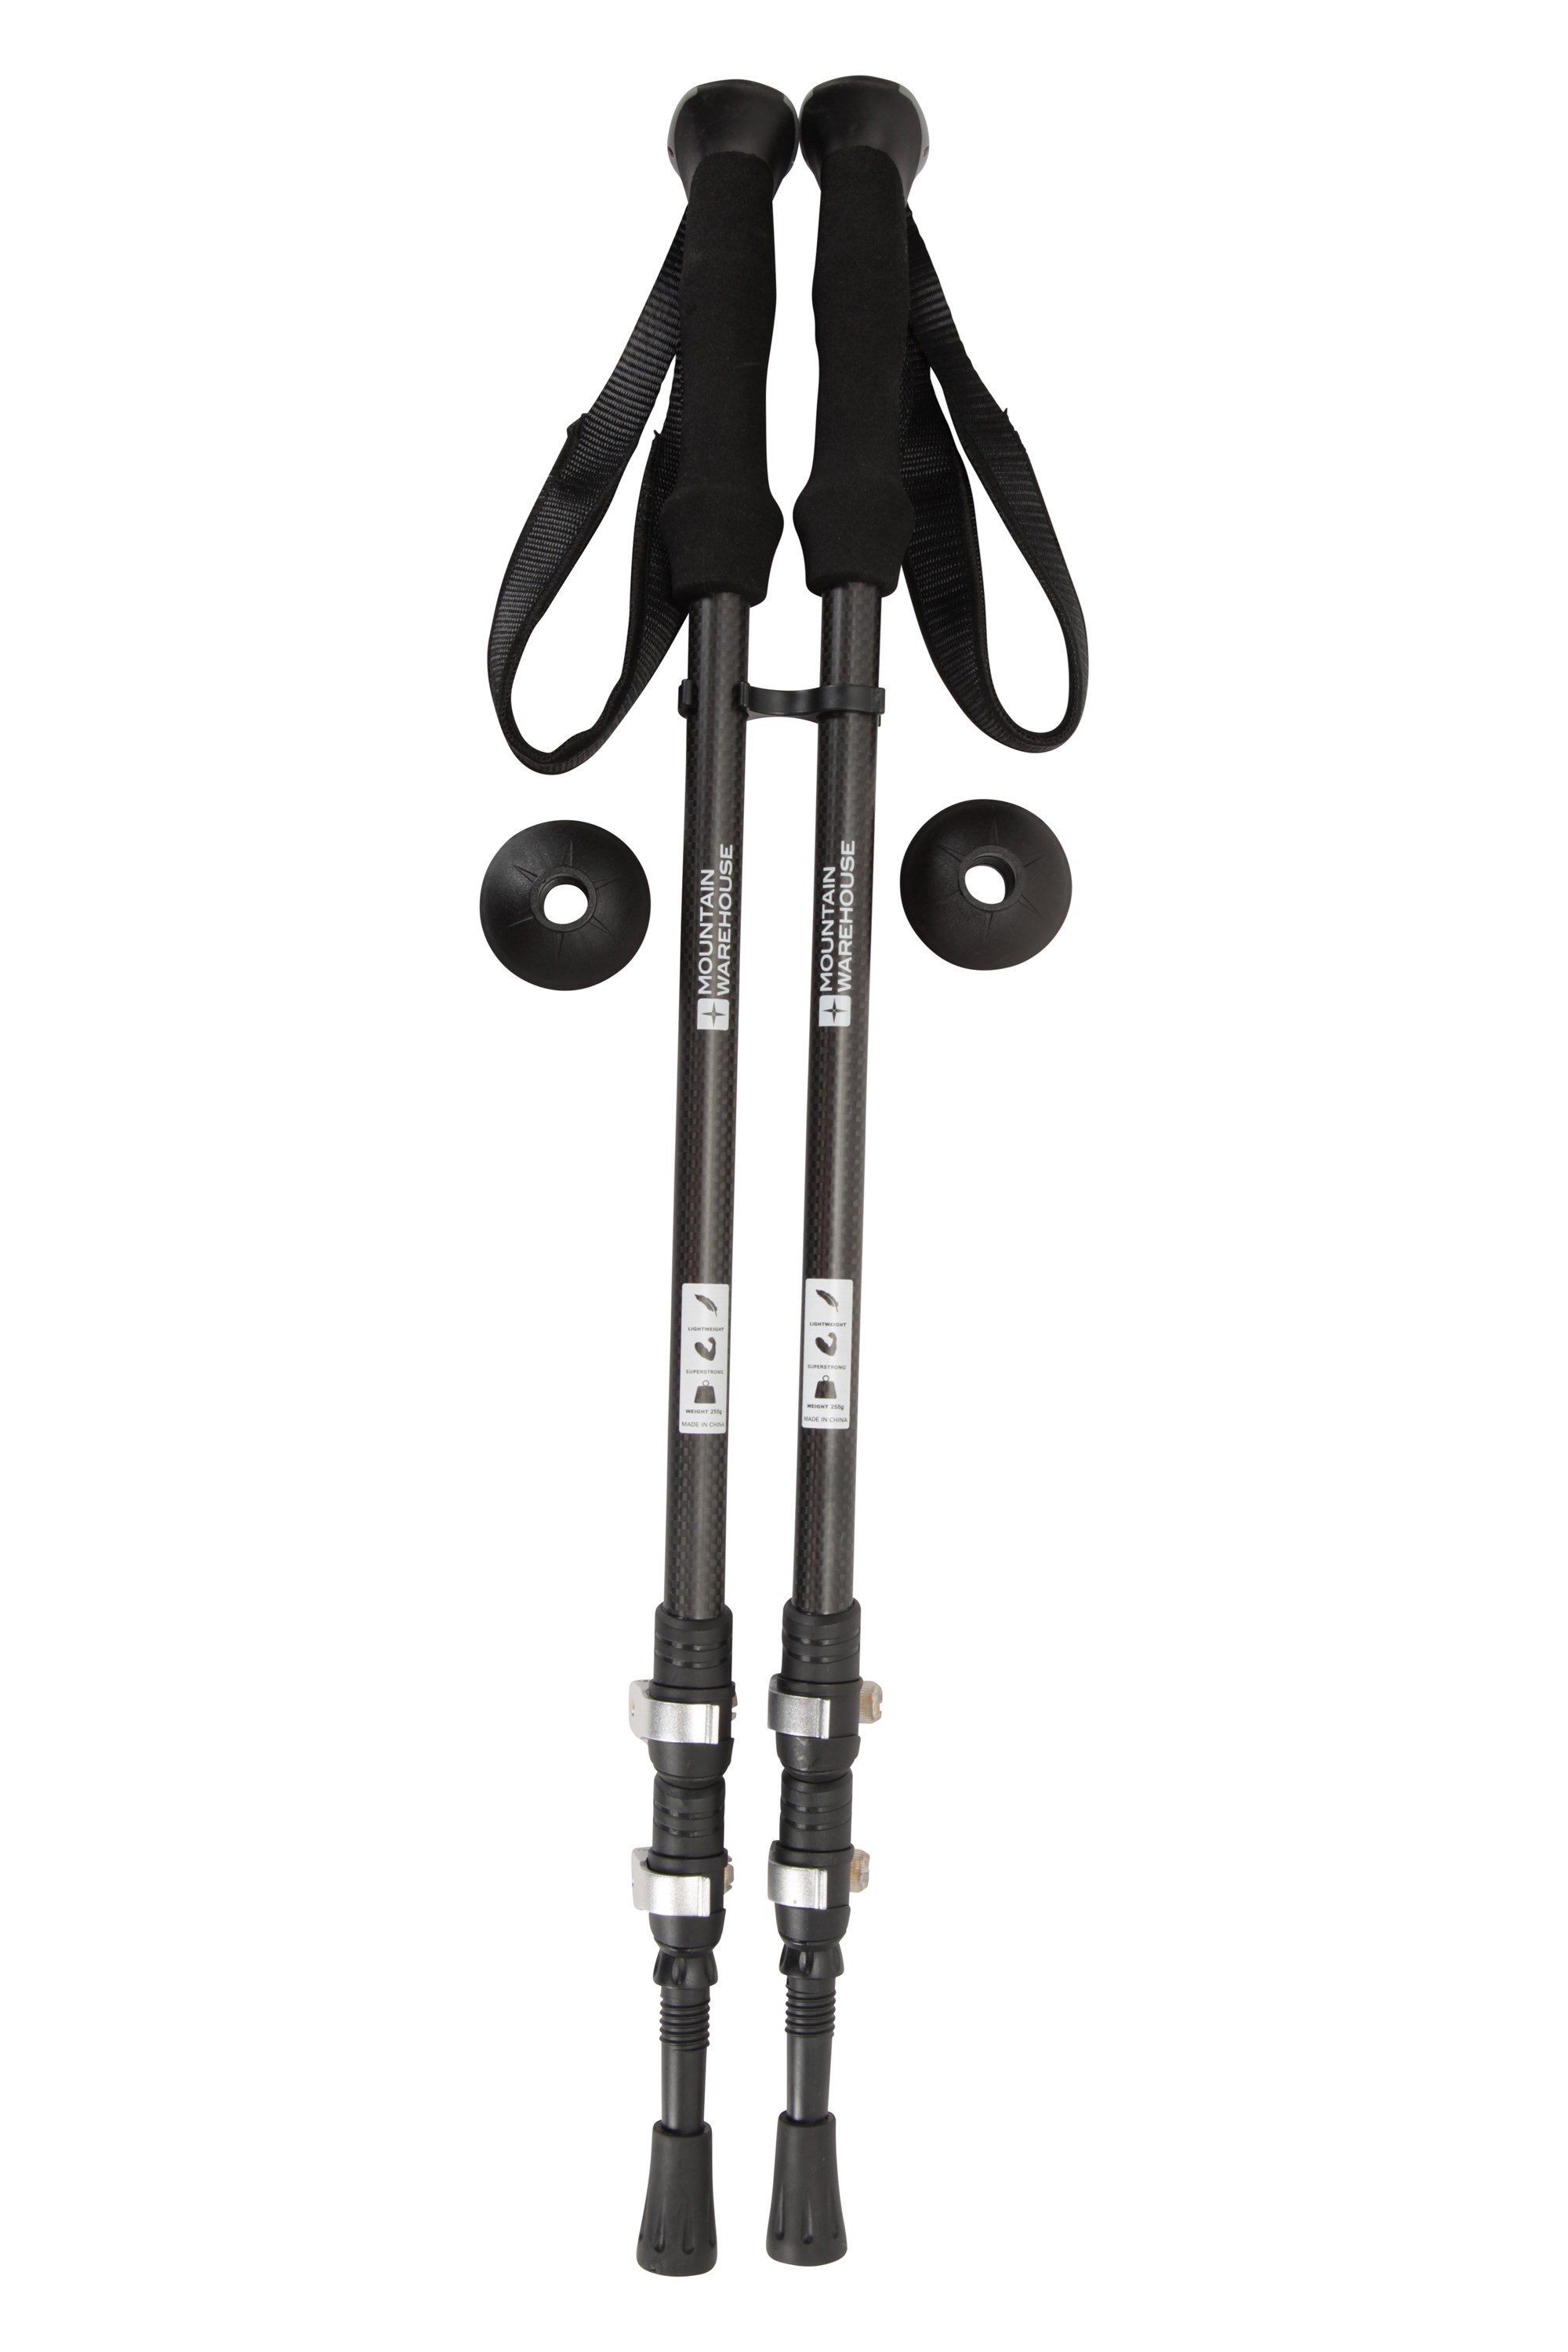 Mountain Warehouse Unisex Hiker Walking Pole in Black w/ Wrist Strap 64-135 cm 